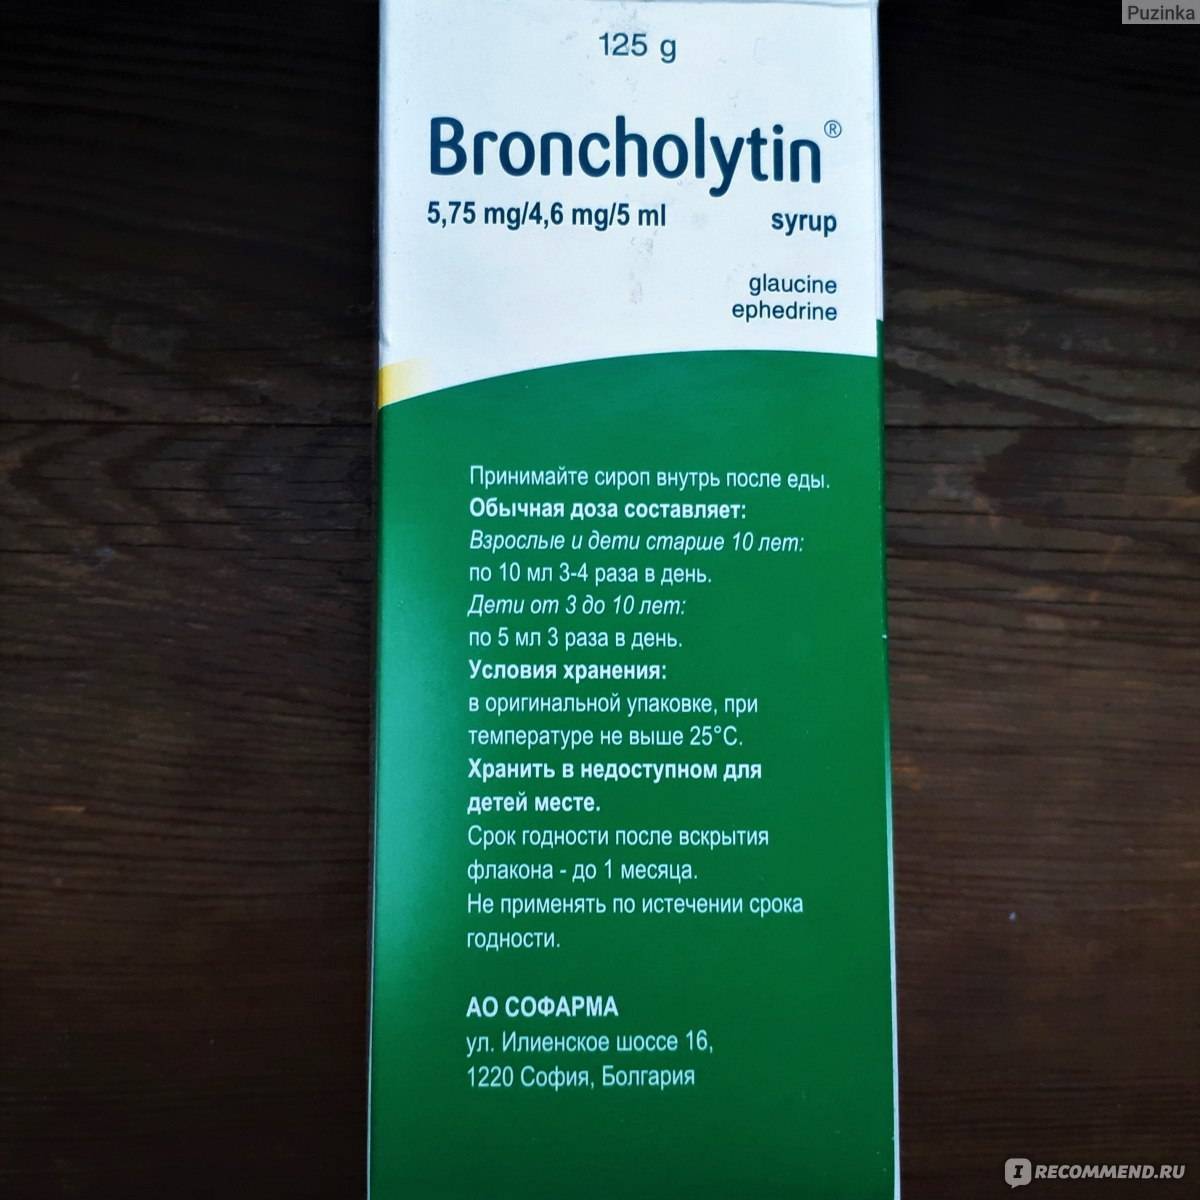 «бронхолитин» — препарат для лечения сухого, непродуктивного кашля